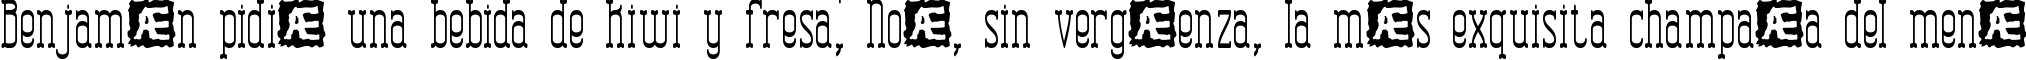 Пример написания шрифтом Combustion Tall BRK текста на испанском